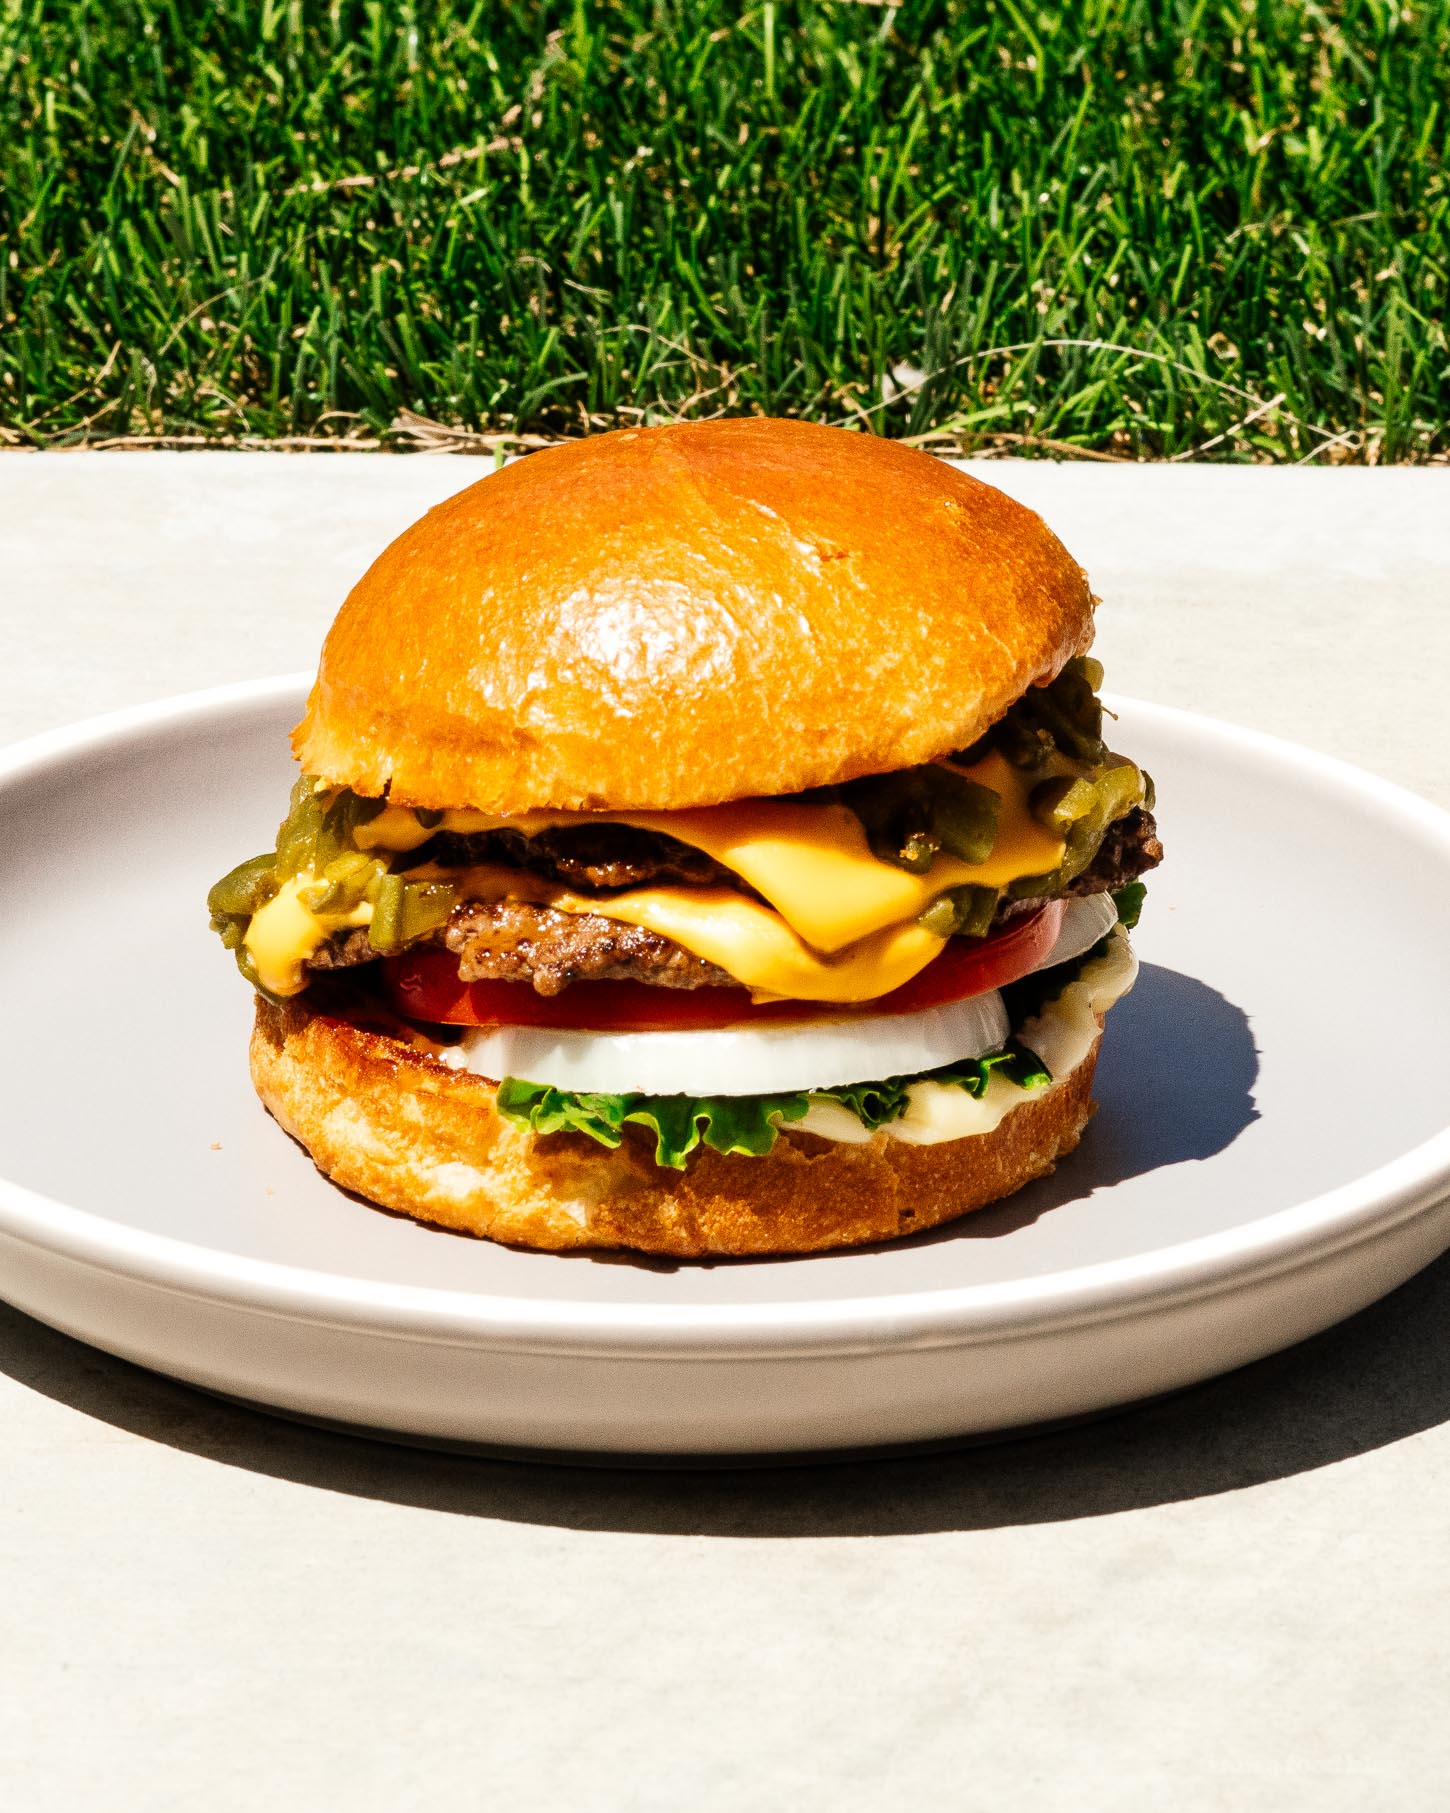 Un cheeseburger au piment vert Hatch pourrait être la meilleure chose du Nouveau-Mexique.  Super juteux, légèrement épicé et tellement addictif.  C'est la recette de burger que vous voulez faire en ce moment.  #burger #burgerrecipe #recipes #dinner #dinnerrecipes #cheeseburger #newmexico